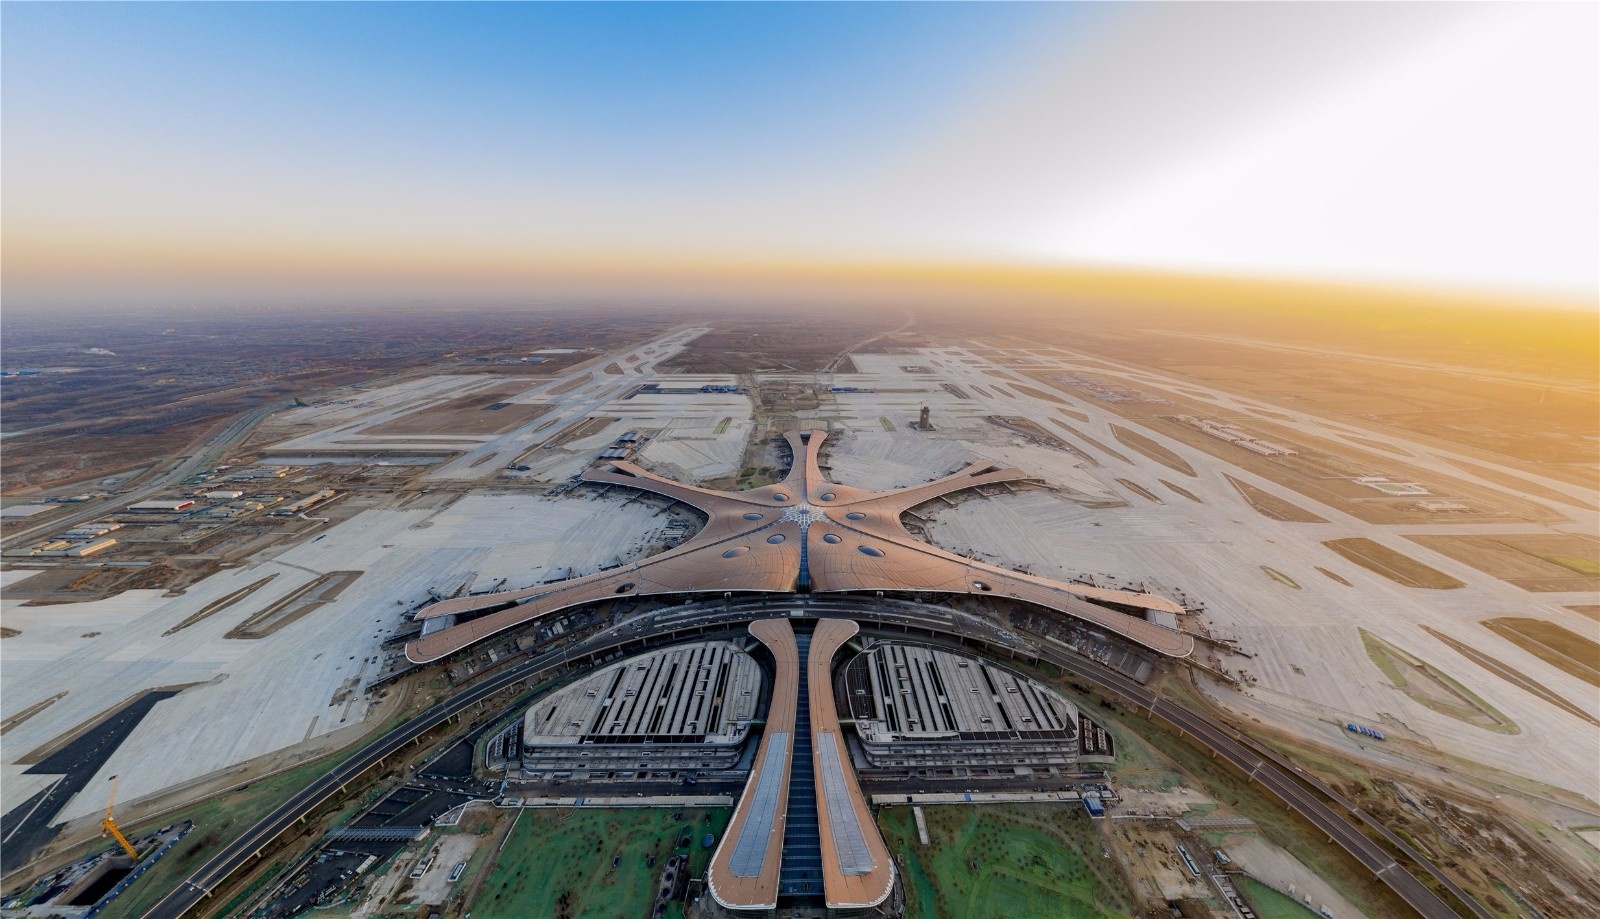 图片来源:全景网 北京大兴国际机场,位于中国北京市大兴区礼贤镇,榆垡